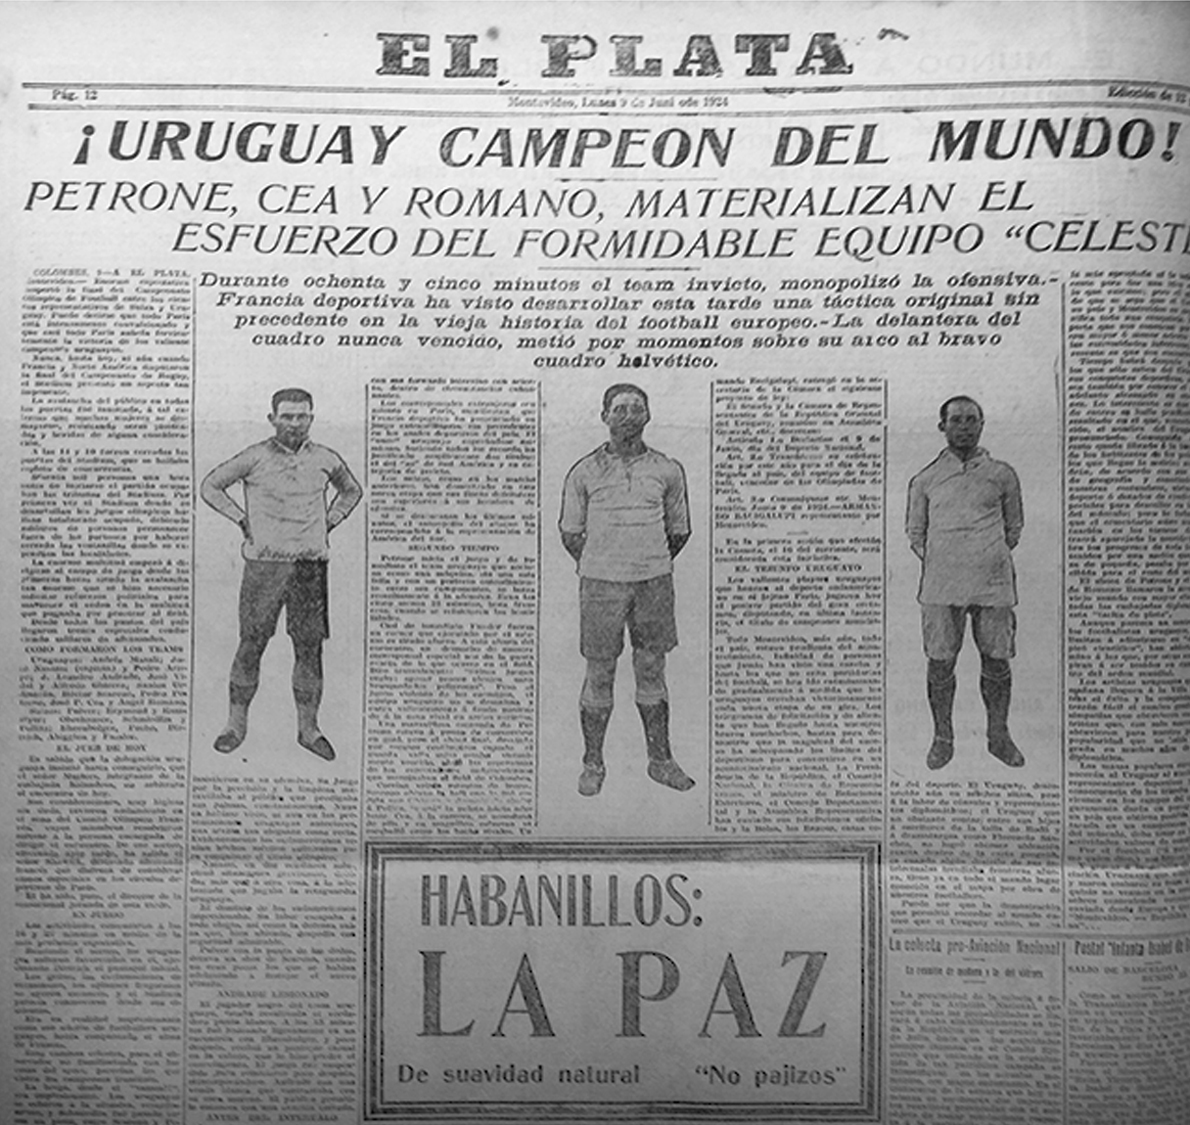 Diario Olé - 🇺🇾 Luego de que la FIFA le exigiera a Uruguay quitar las dos  estrellas de su escudo correspondientes a los Juegos Olímpicos 1924 y 1928,  llegó la respuesta desde